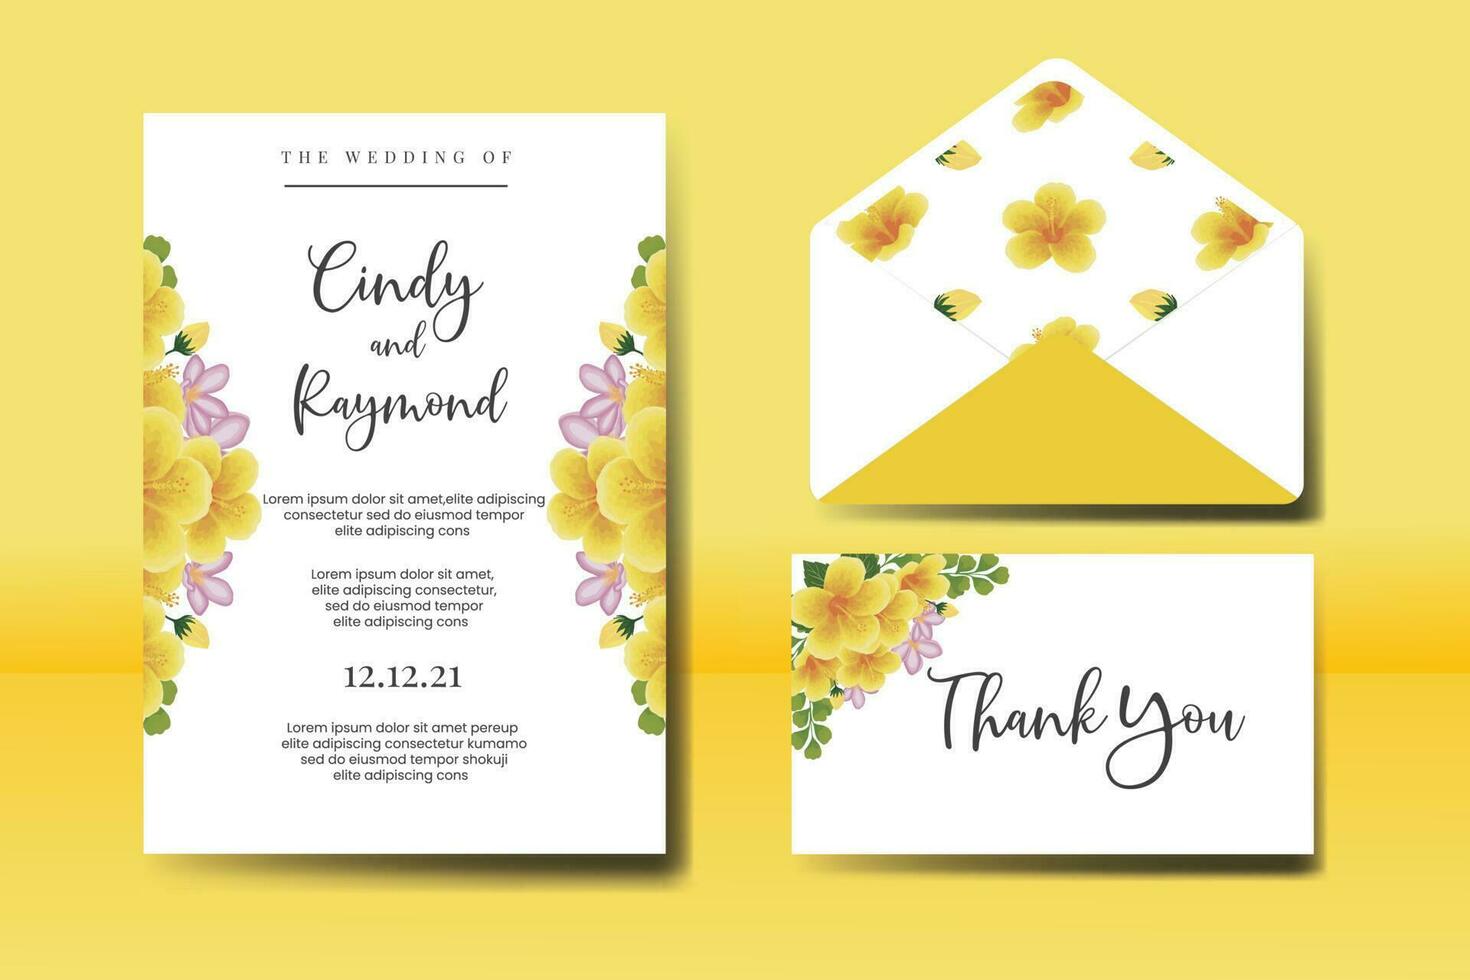 bröllop inbjudan ram uppsättning, blommig vattenfärg digital hand dragen gul hibiskus blomma design inbjudan kort mall vektor